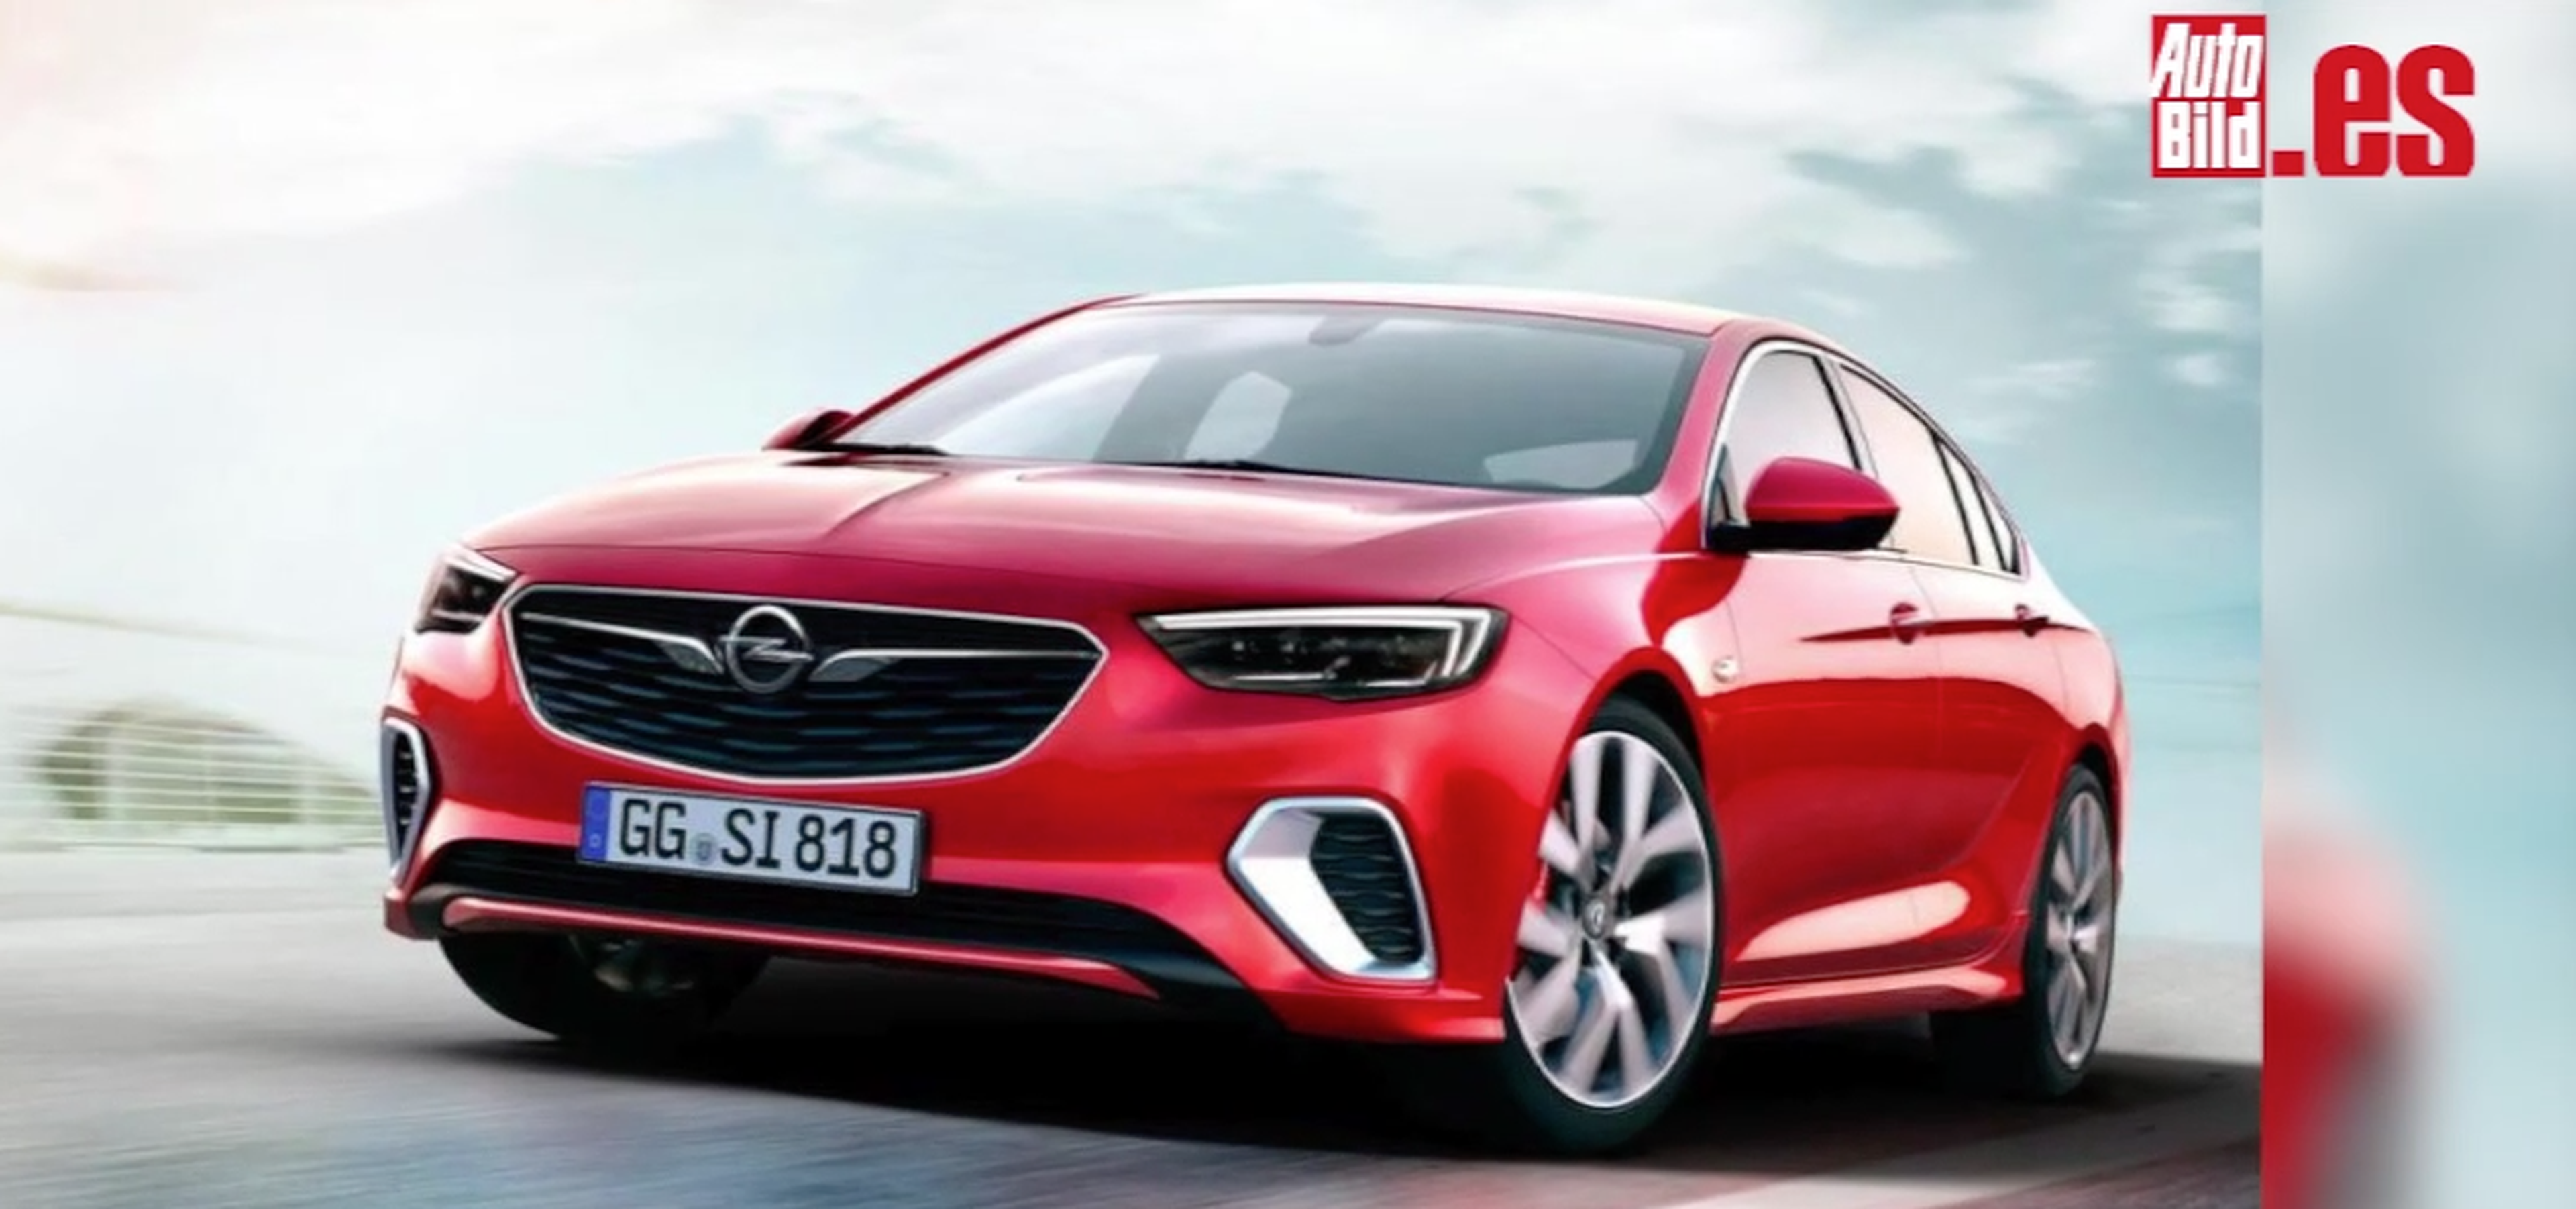 VÍDEO: Opel Insignia GSI, siglas sagradas para el tope de gama